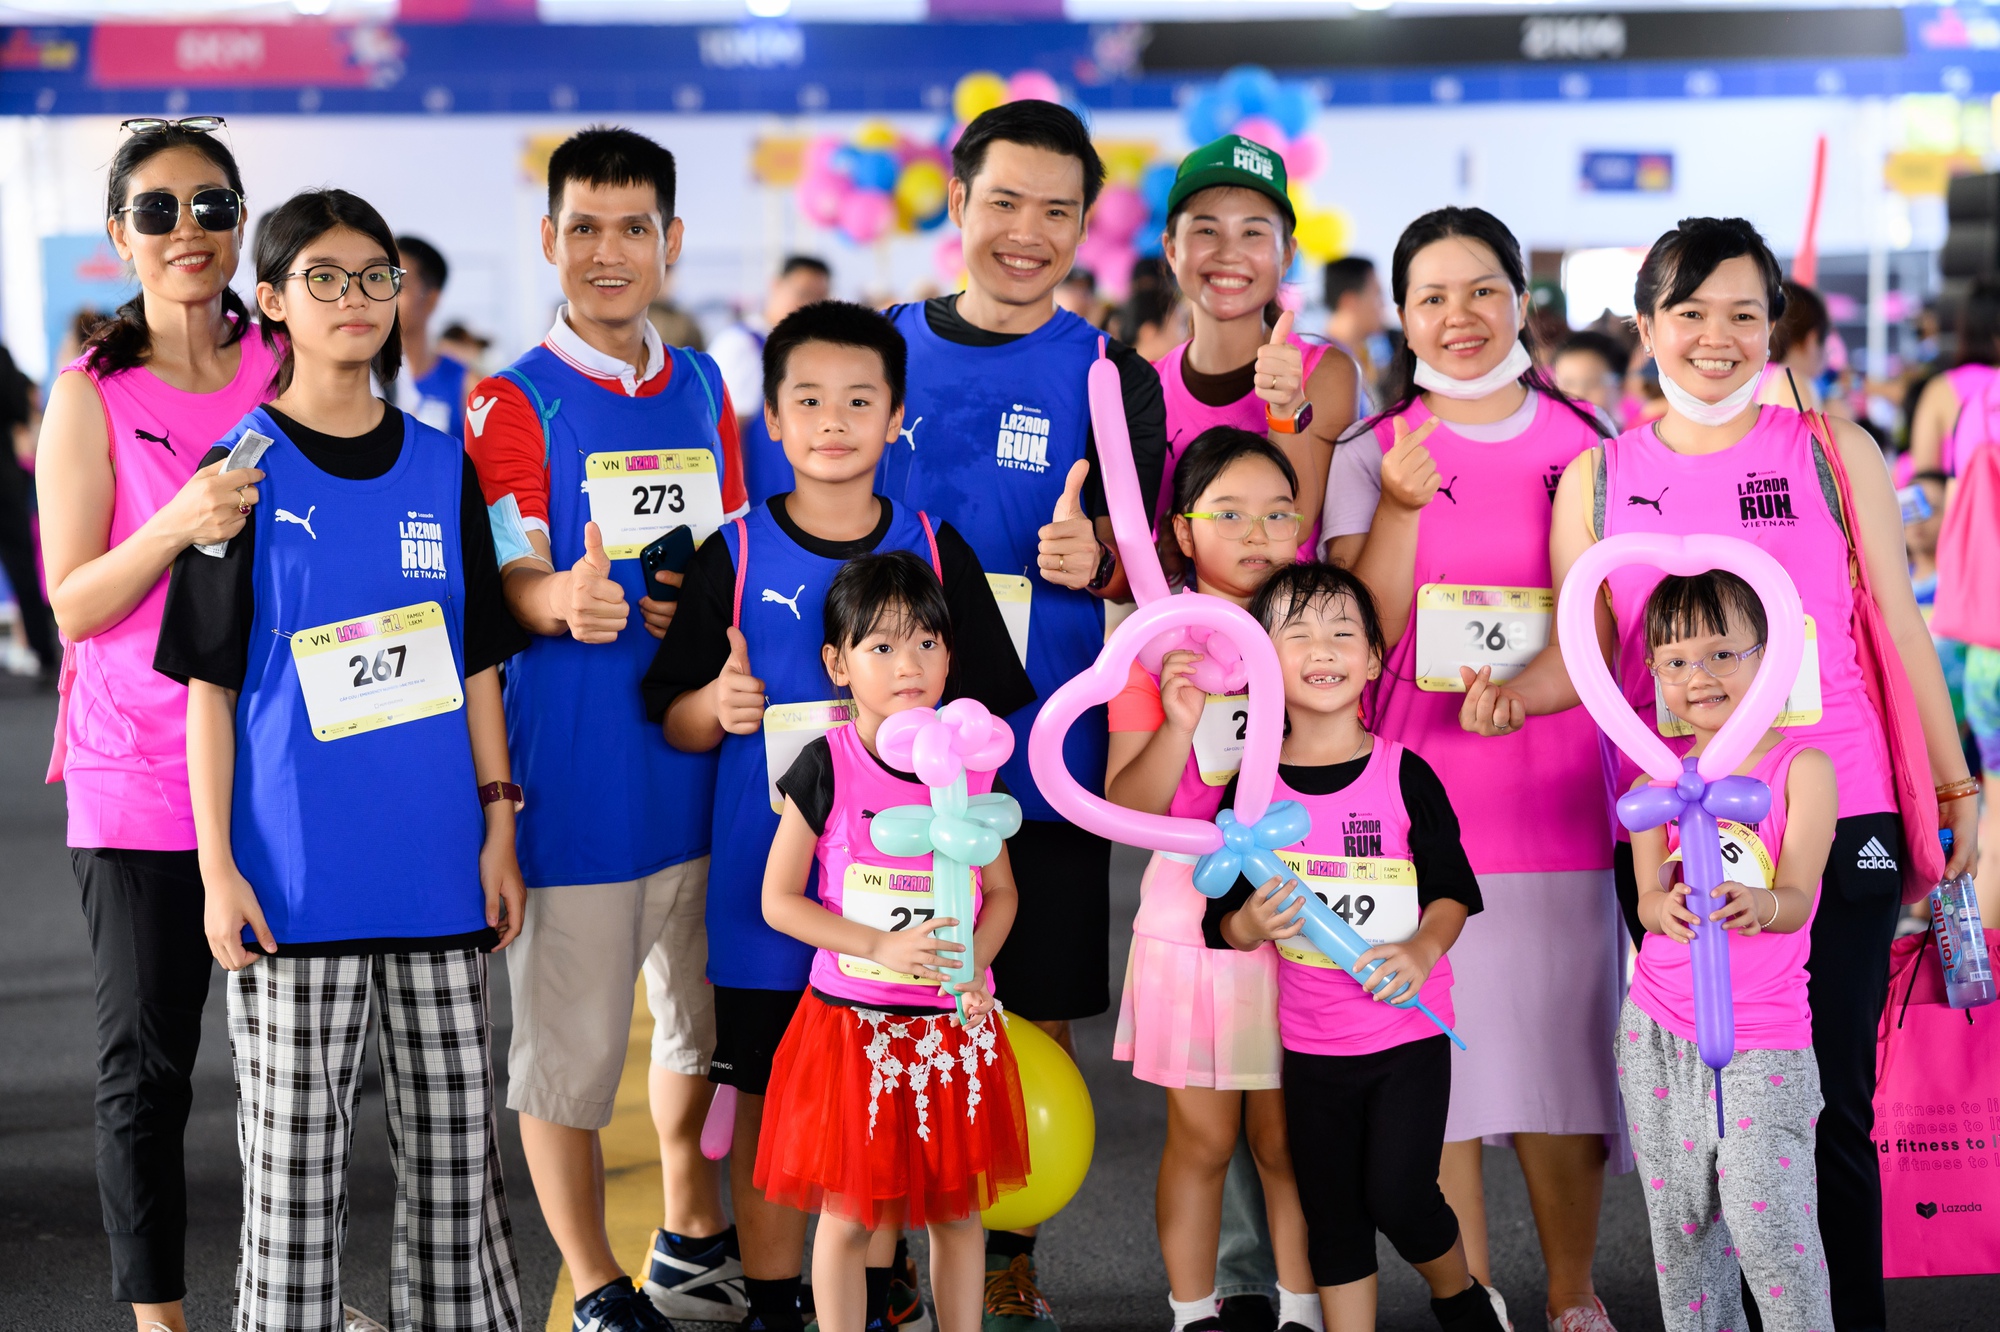 Giải chạy Marathon trở thành sân chơi mới mà nhiều bố mẹ hiện đại lựa chọn cho trẻ vận động - Ảnh 4.